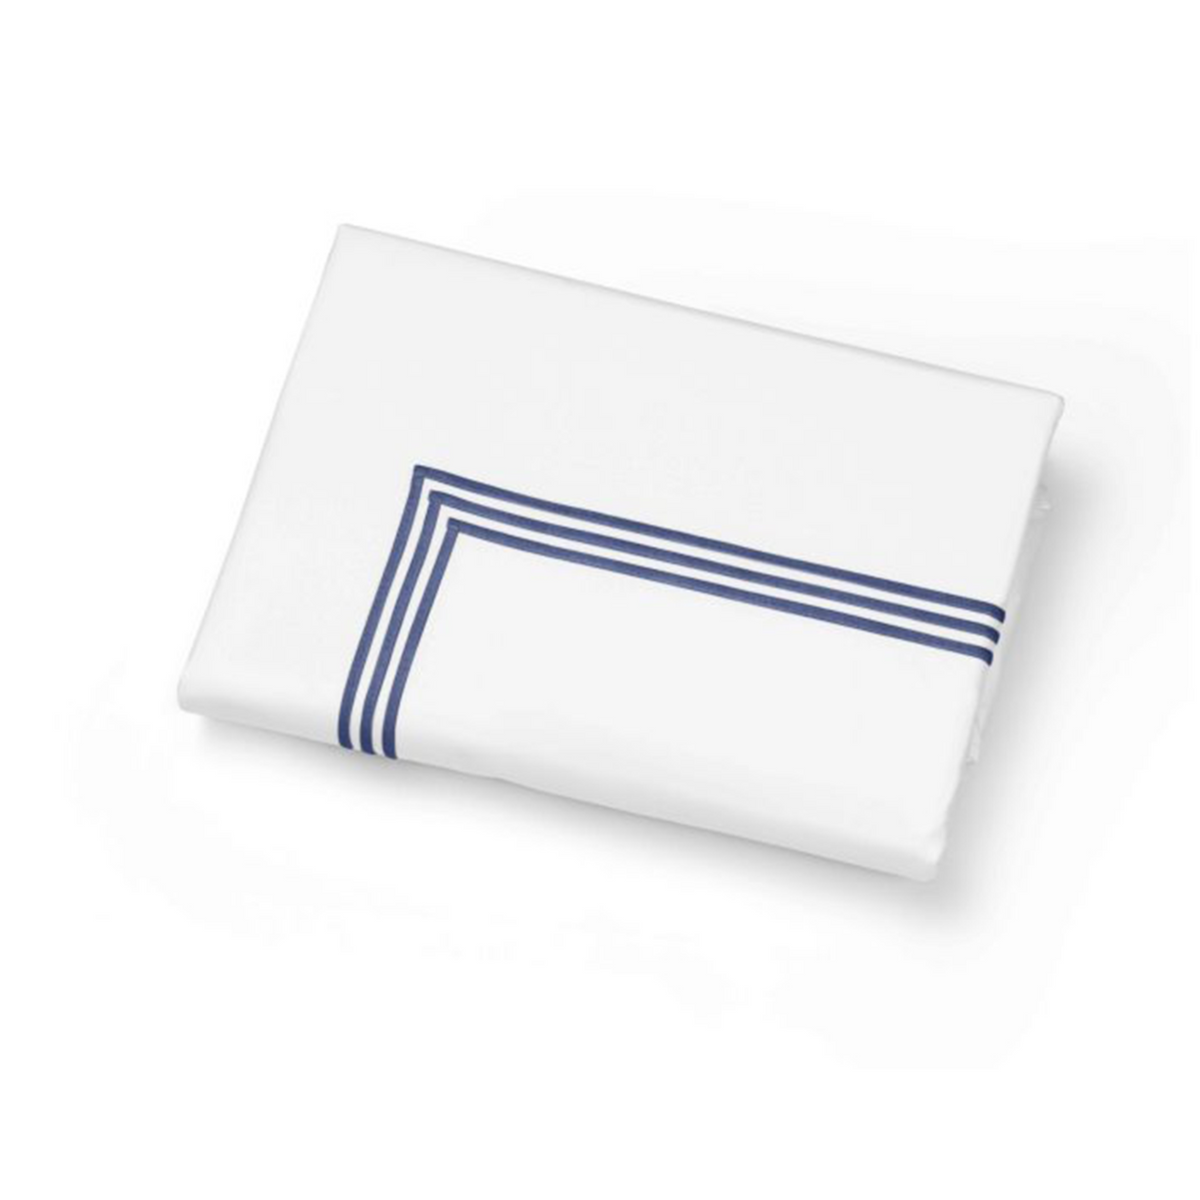 Folded Duvet Cover of Signoria Platinum Percale Bedding in White/Dark Blue Color